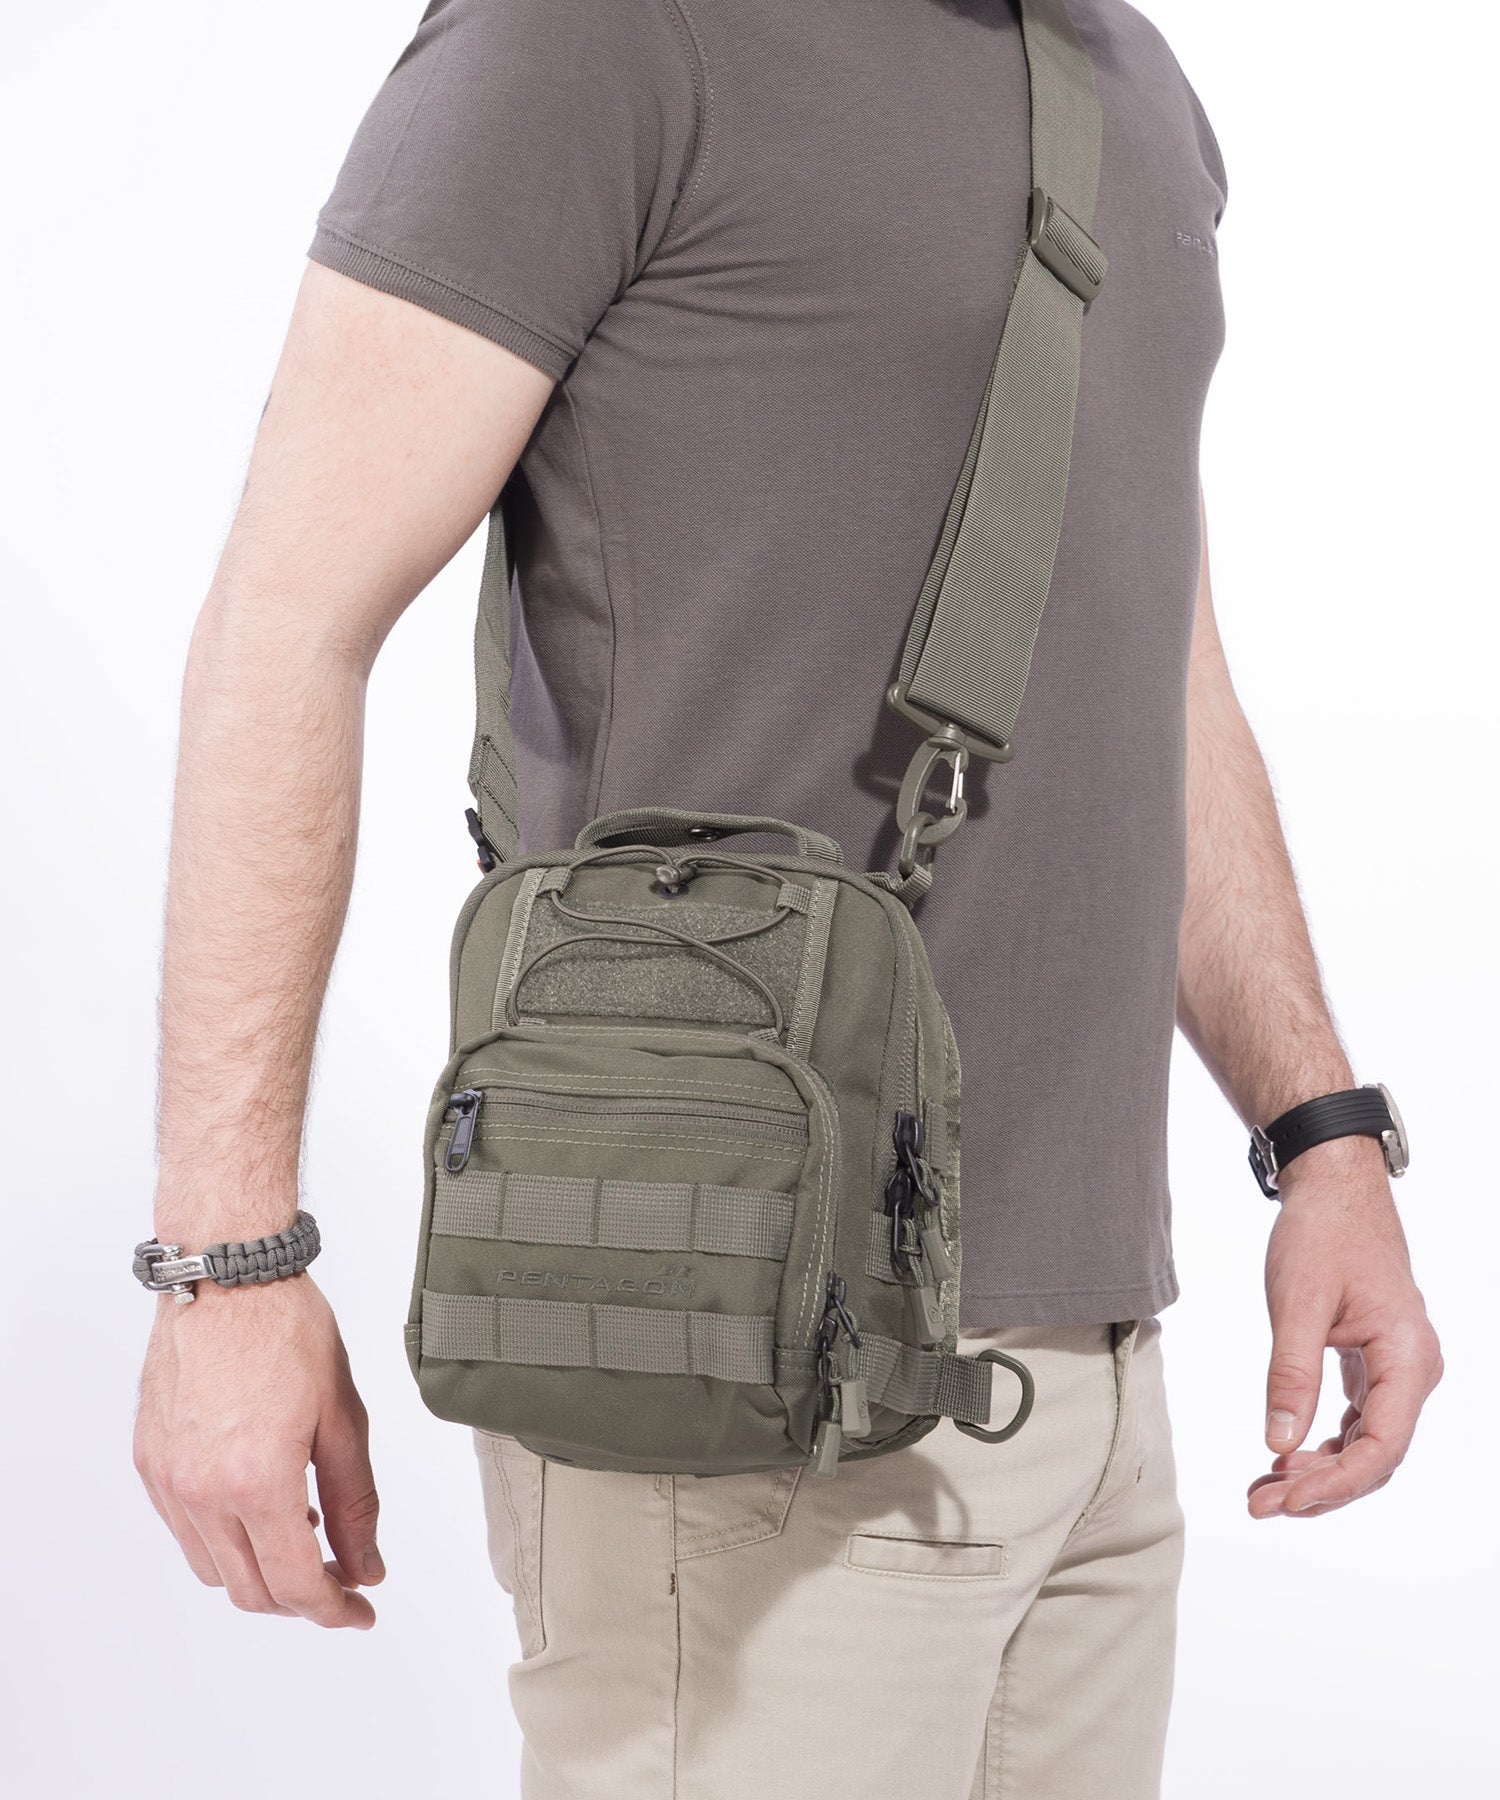 universal chest bag 2.0 di Pentagon indossata a tracolla